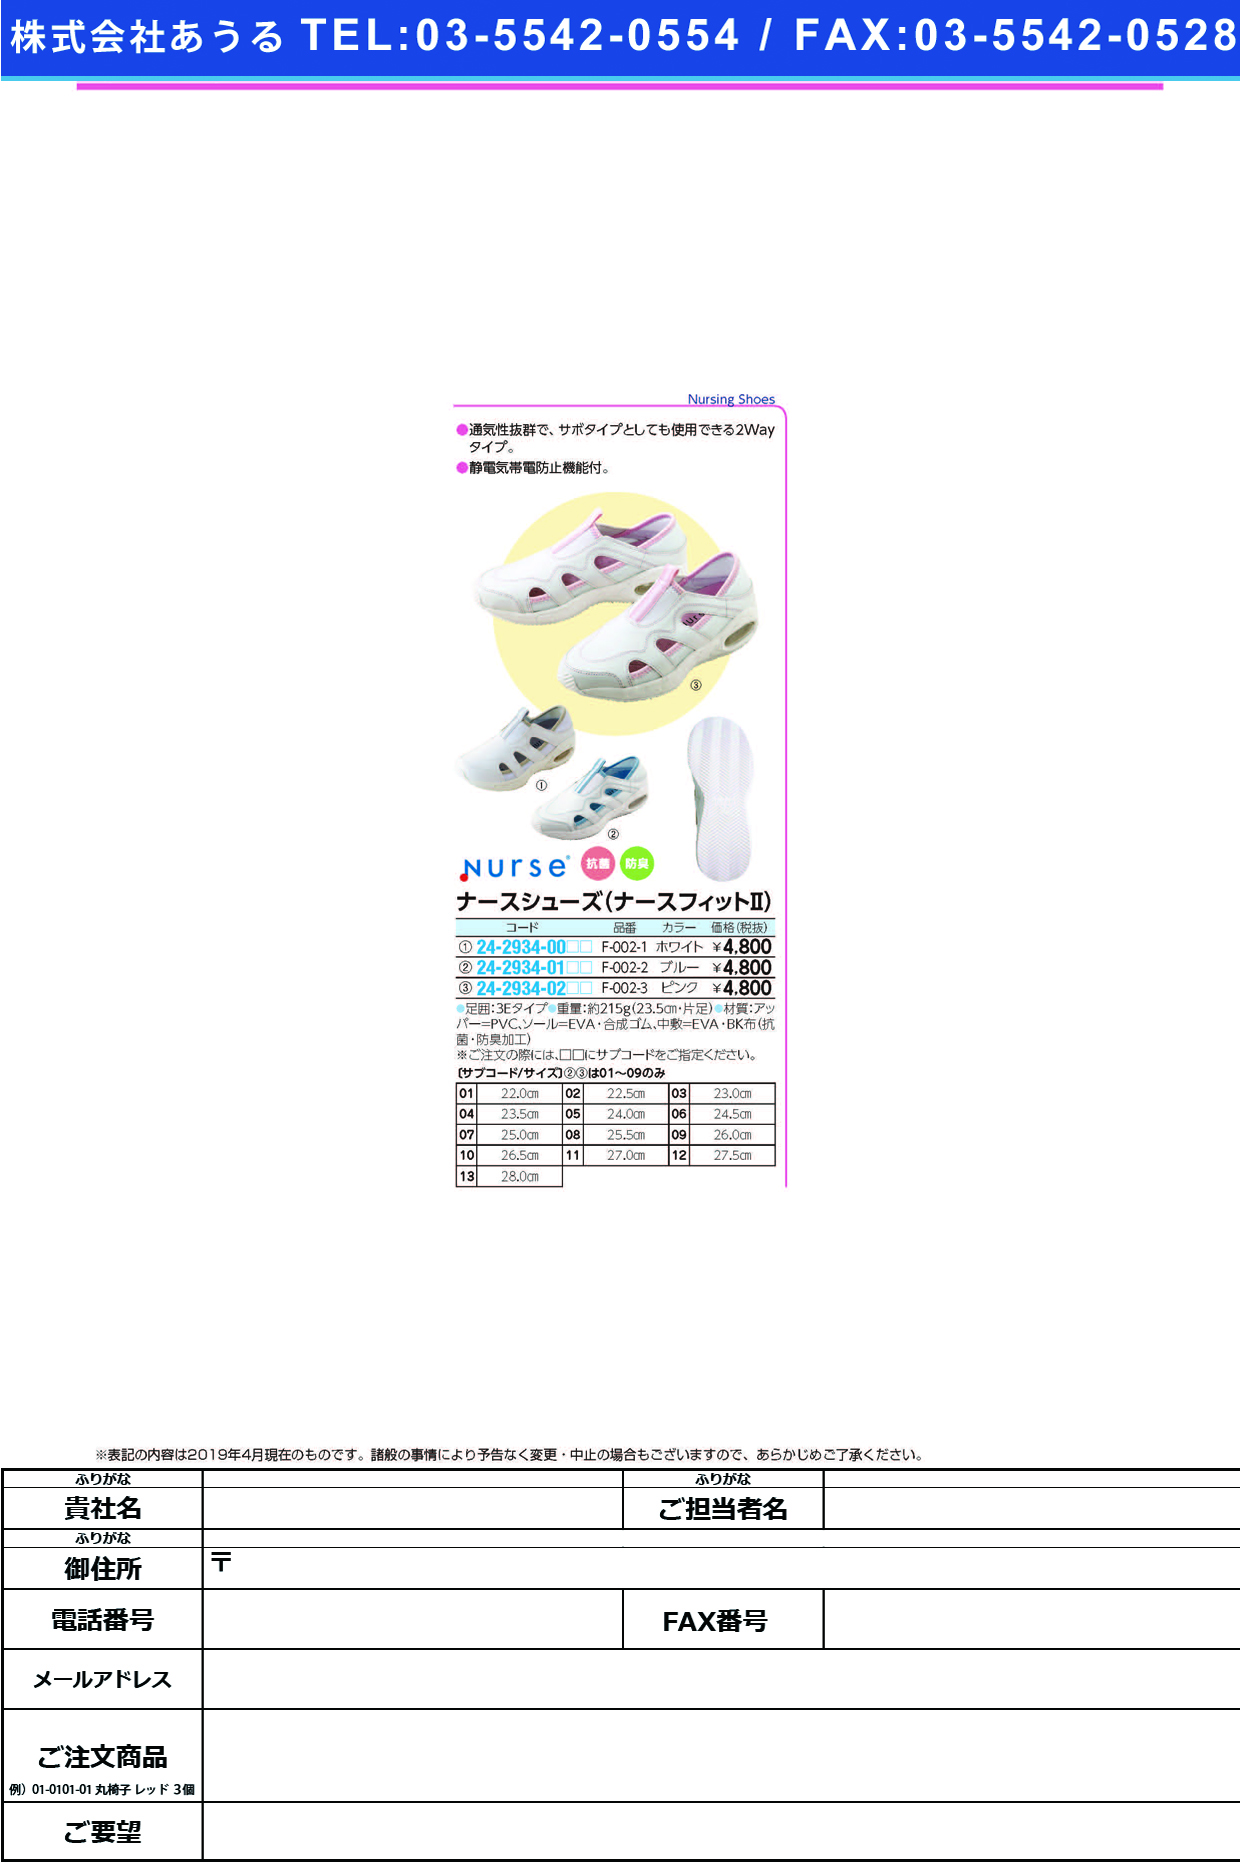 (24-2934-00)ナースシューズナースフィットⅡ F-002-1(ﾎﾜｲﾄ) ﾅｰｽｼｭｰｽﾞﾅｰｽﾌｨｯﾄ2 ２３．０ｃｍ(フォーク)【1足単位】【2019年カタログ商品】